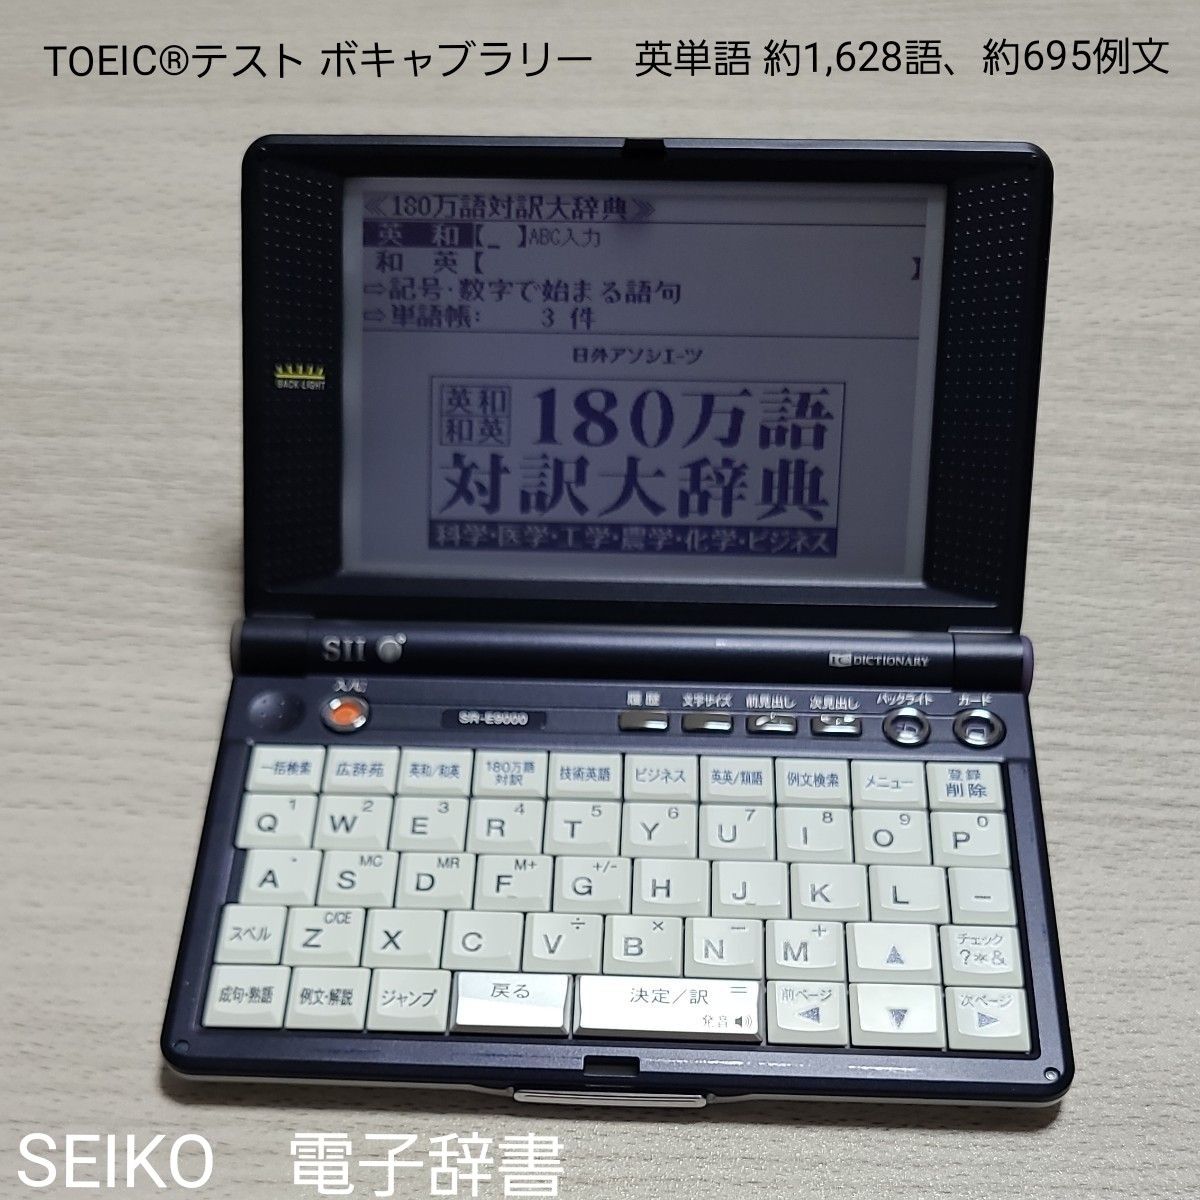 電子辞書 SEIKO IC DICTIONARY SR-E9000 (26コンテンツ, 英語充実モデル, 音声対応, シルカカード